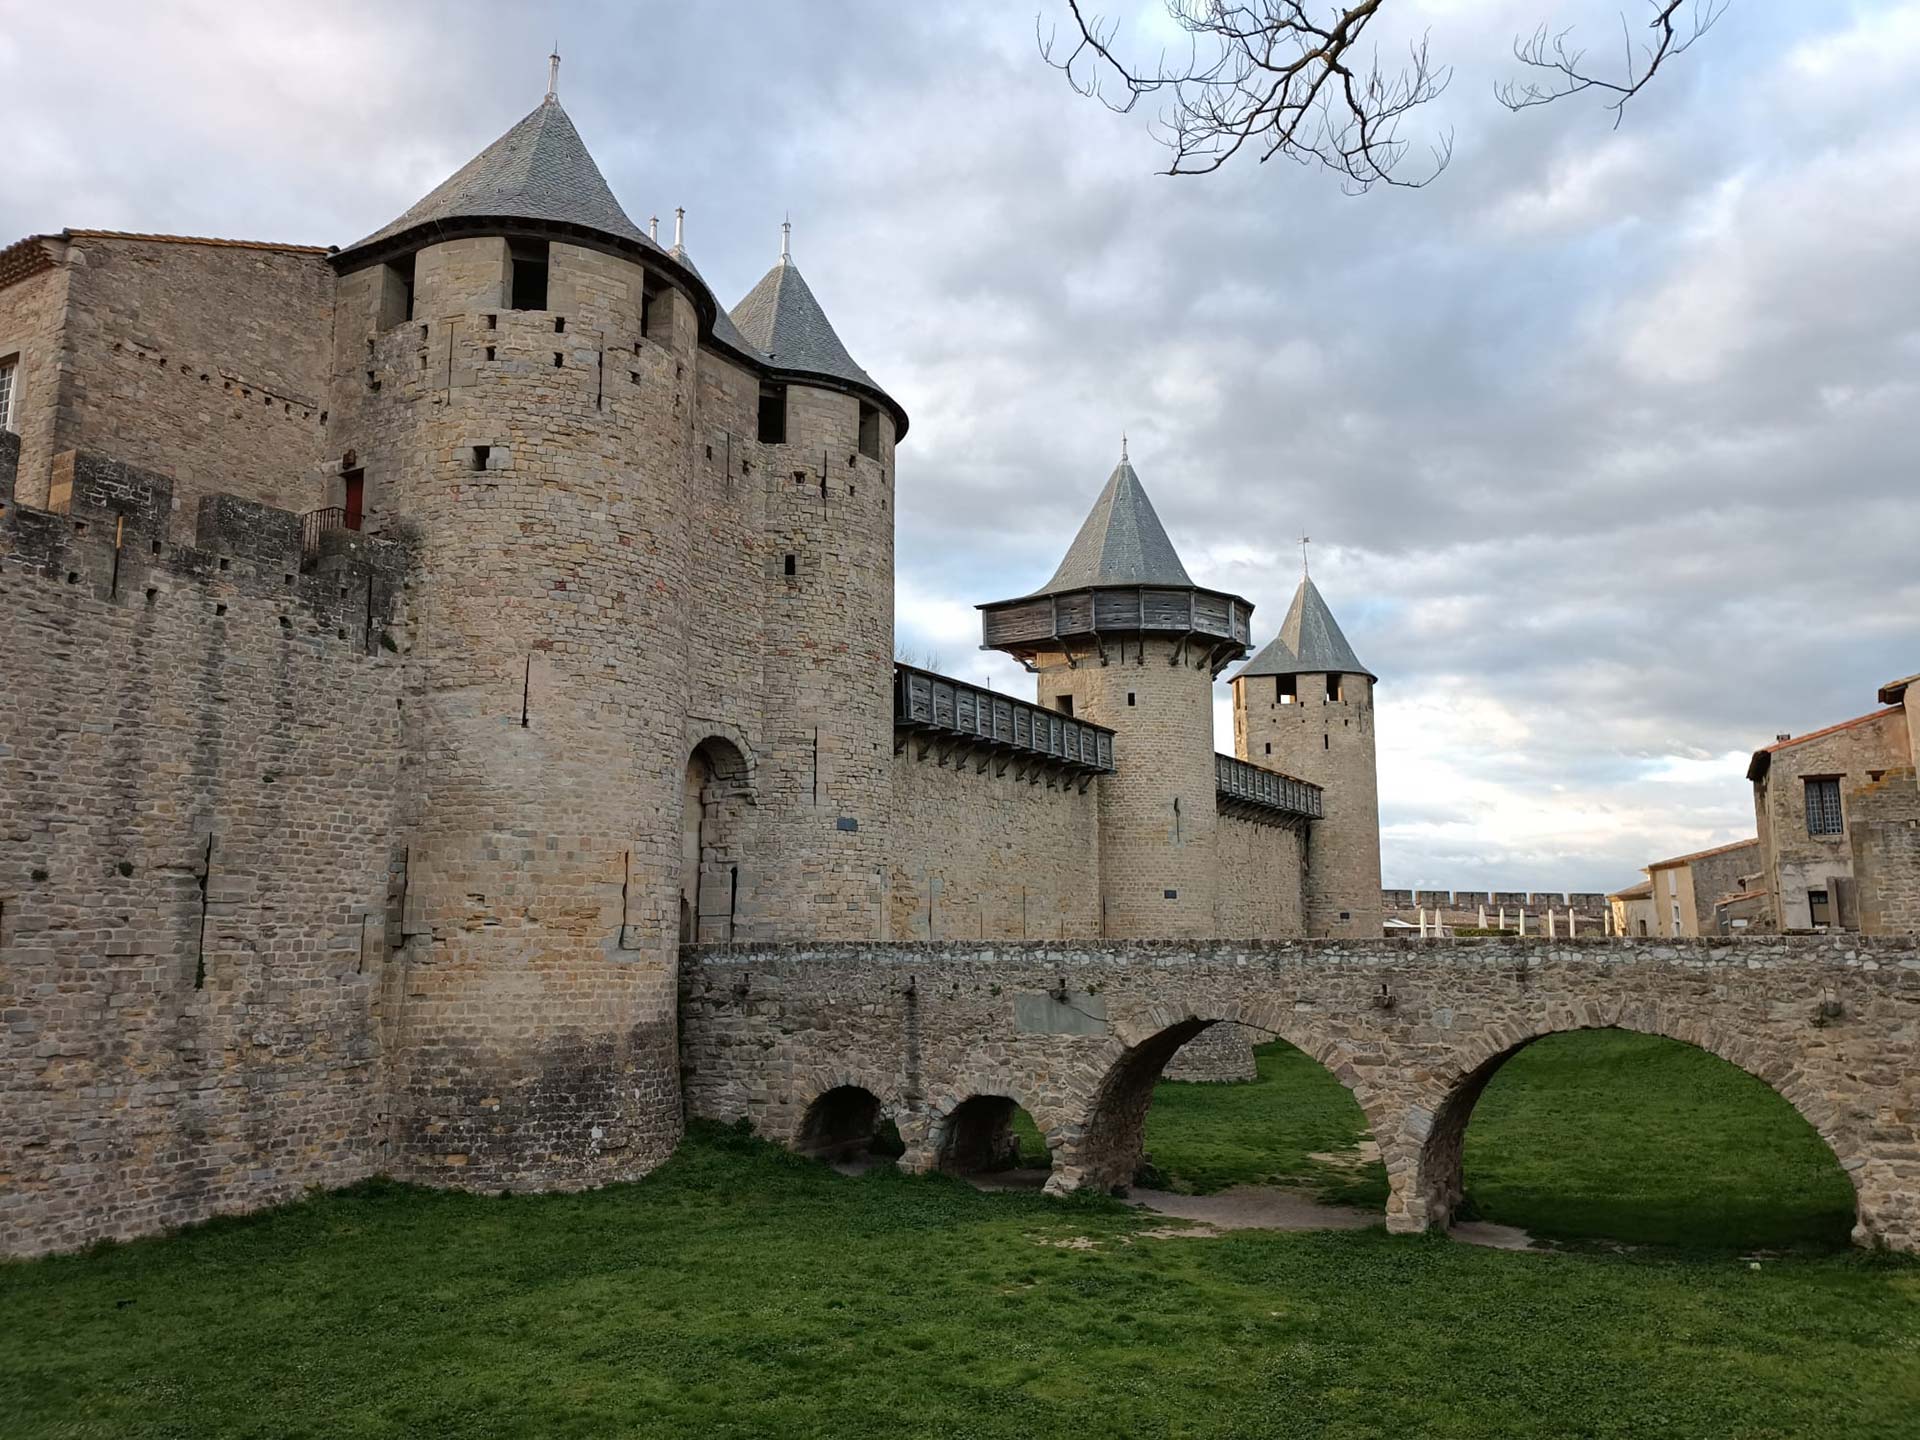 Pont d'entrada, amb fossat a sota ple de gespa i muralla amb torres de Carcassonne.